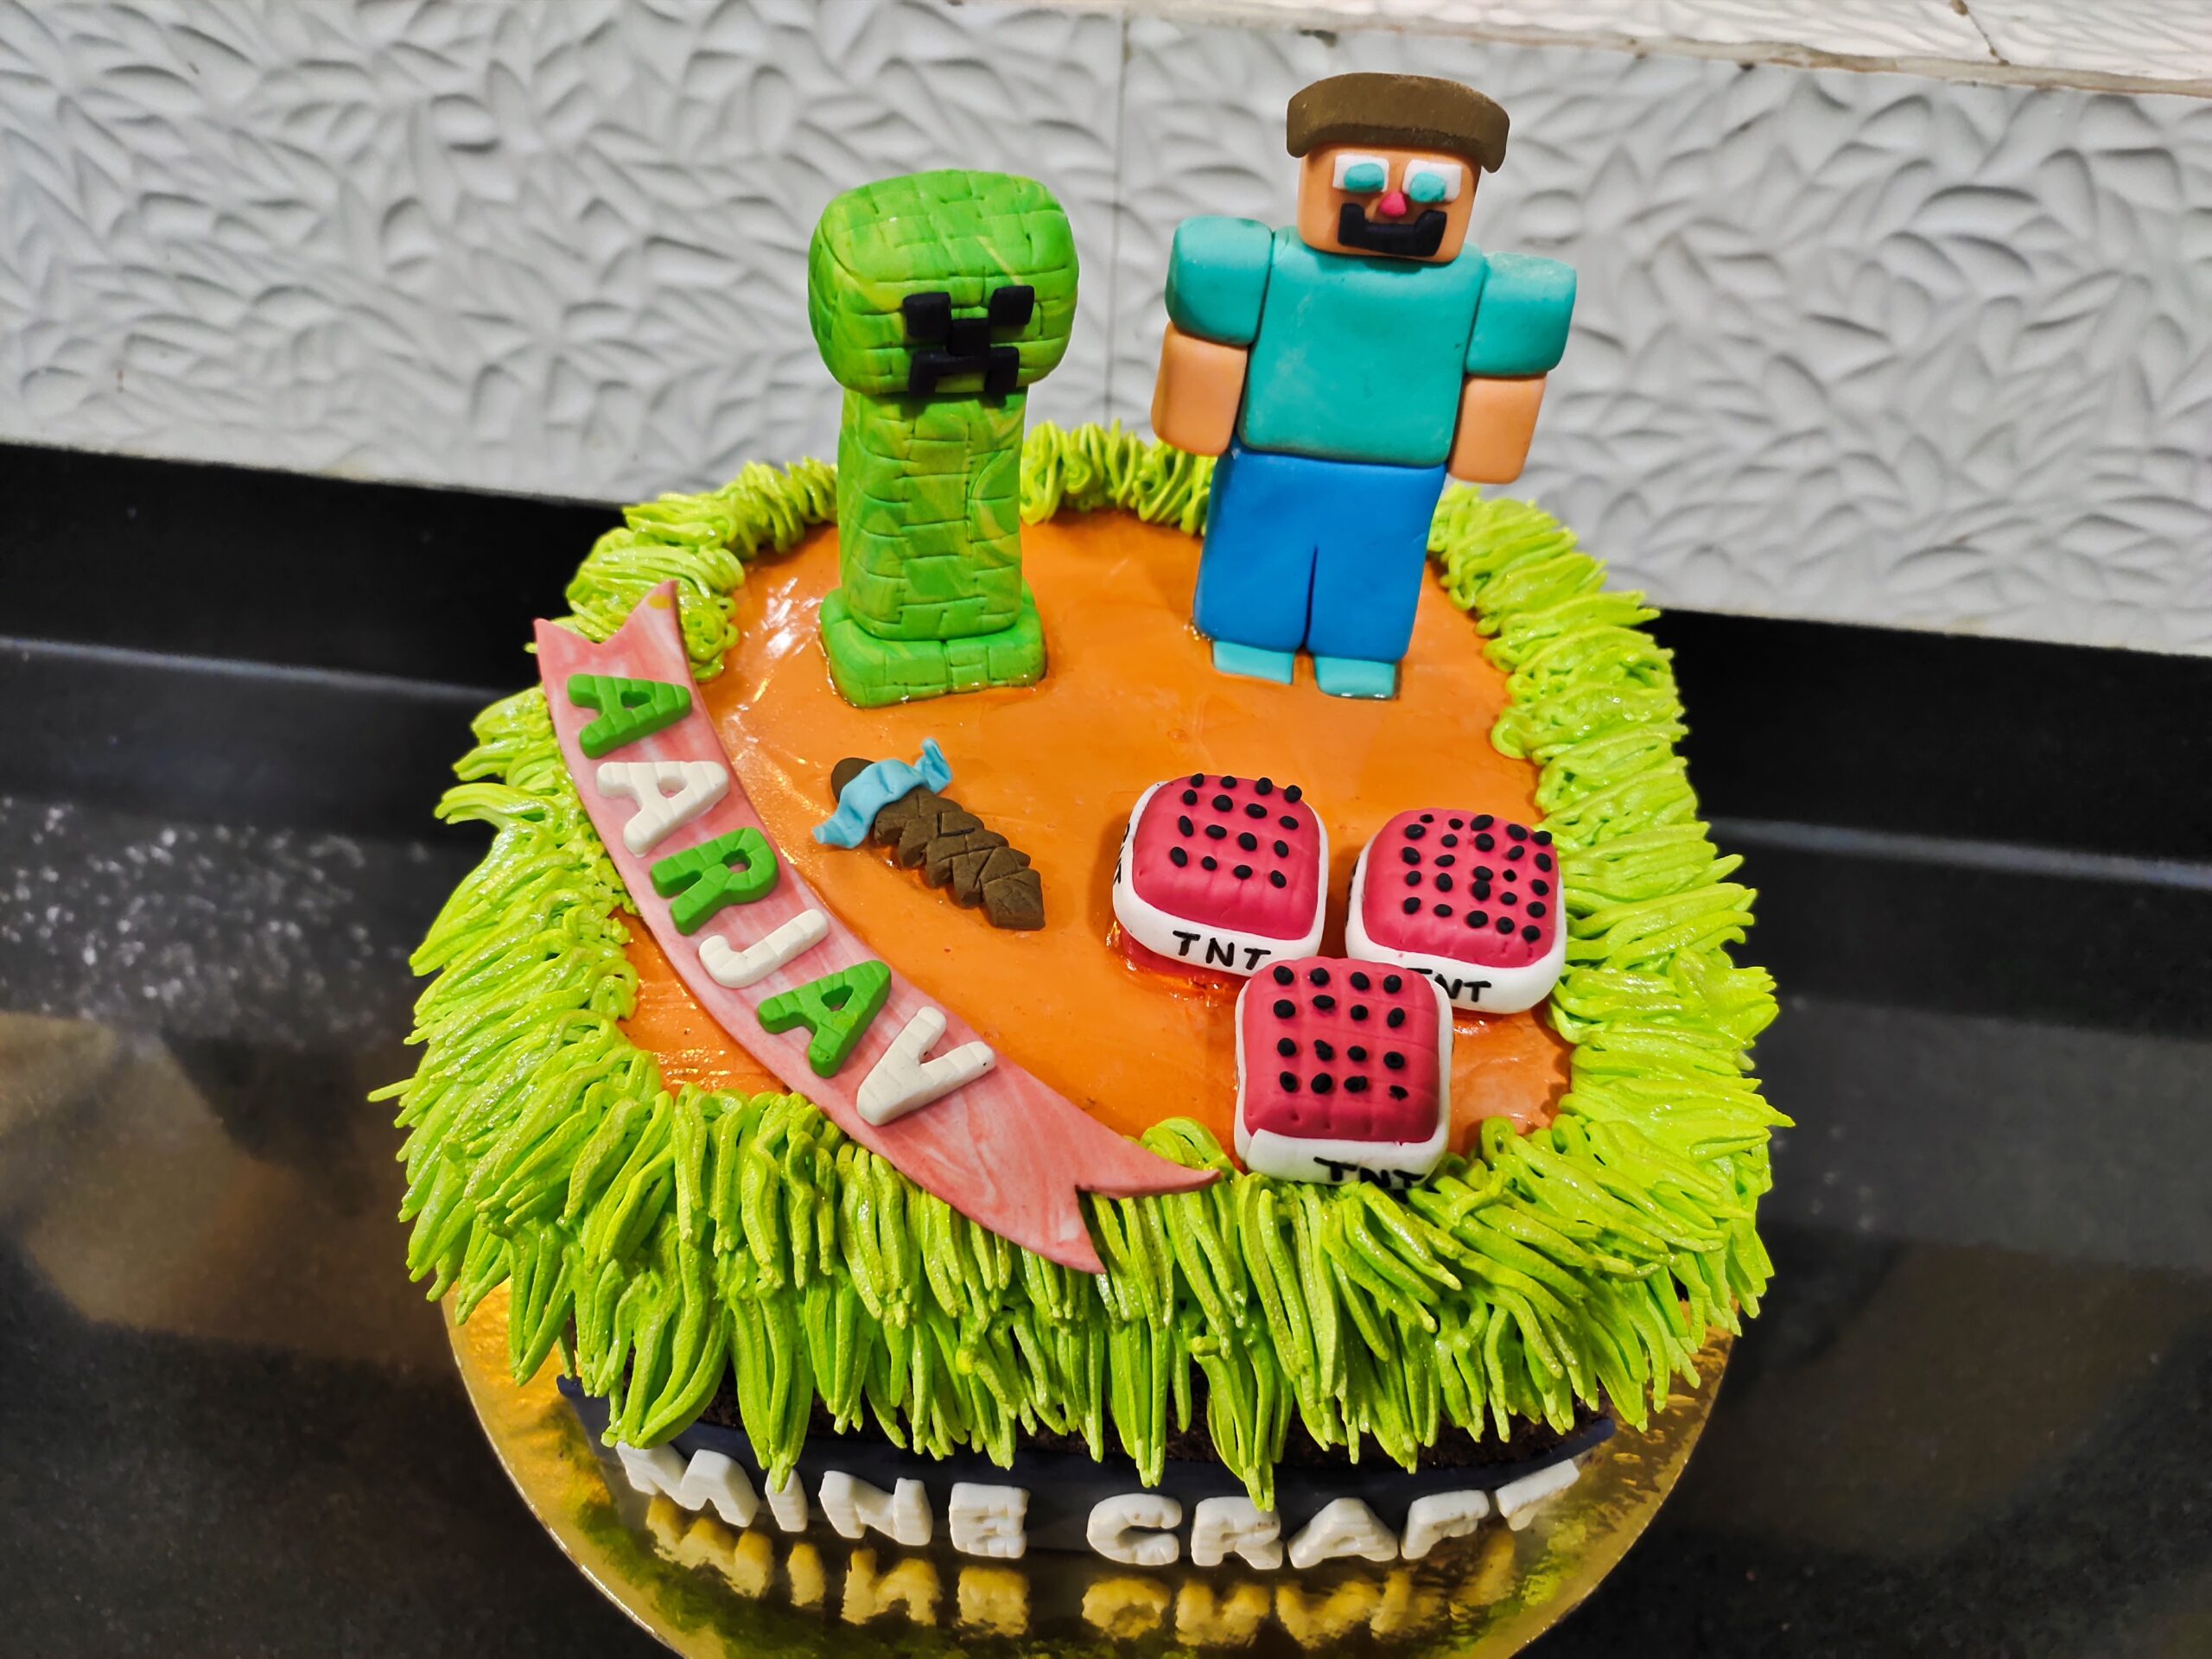 Kellie Kaizer auf X: „Minecraft themed cake #squares #edibleimage  #gantshill https://t.co/hZ3G5hGbLs“ / X